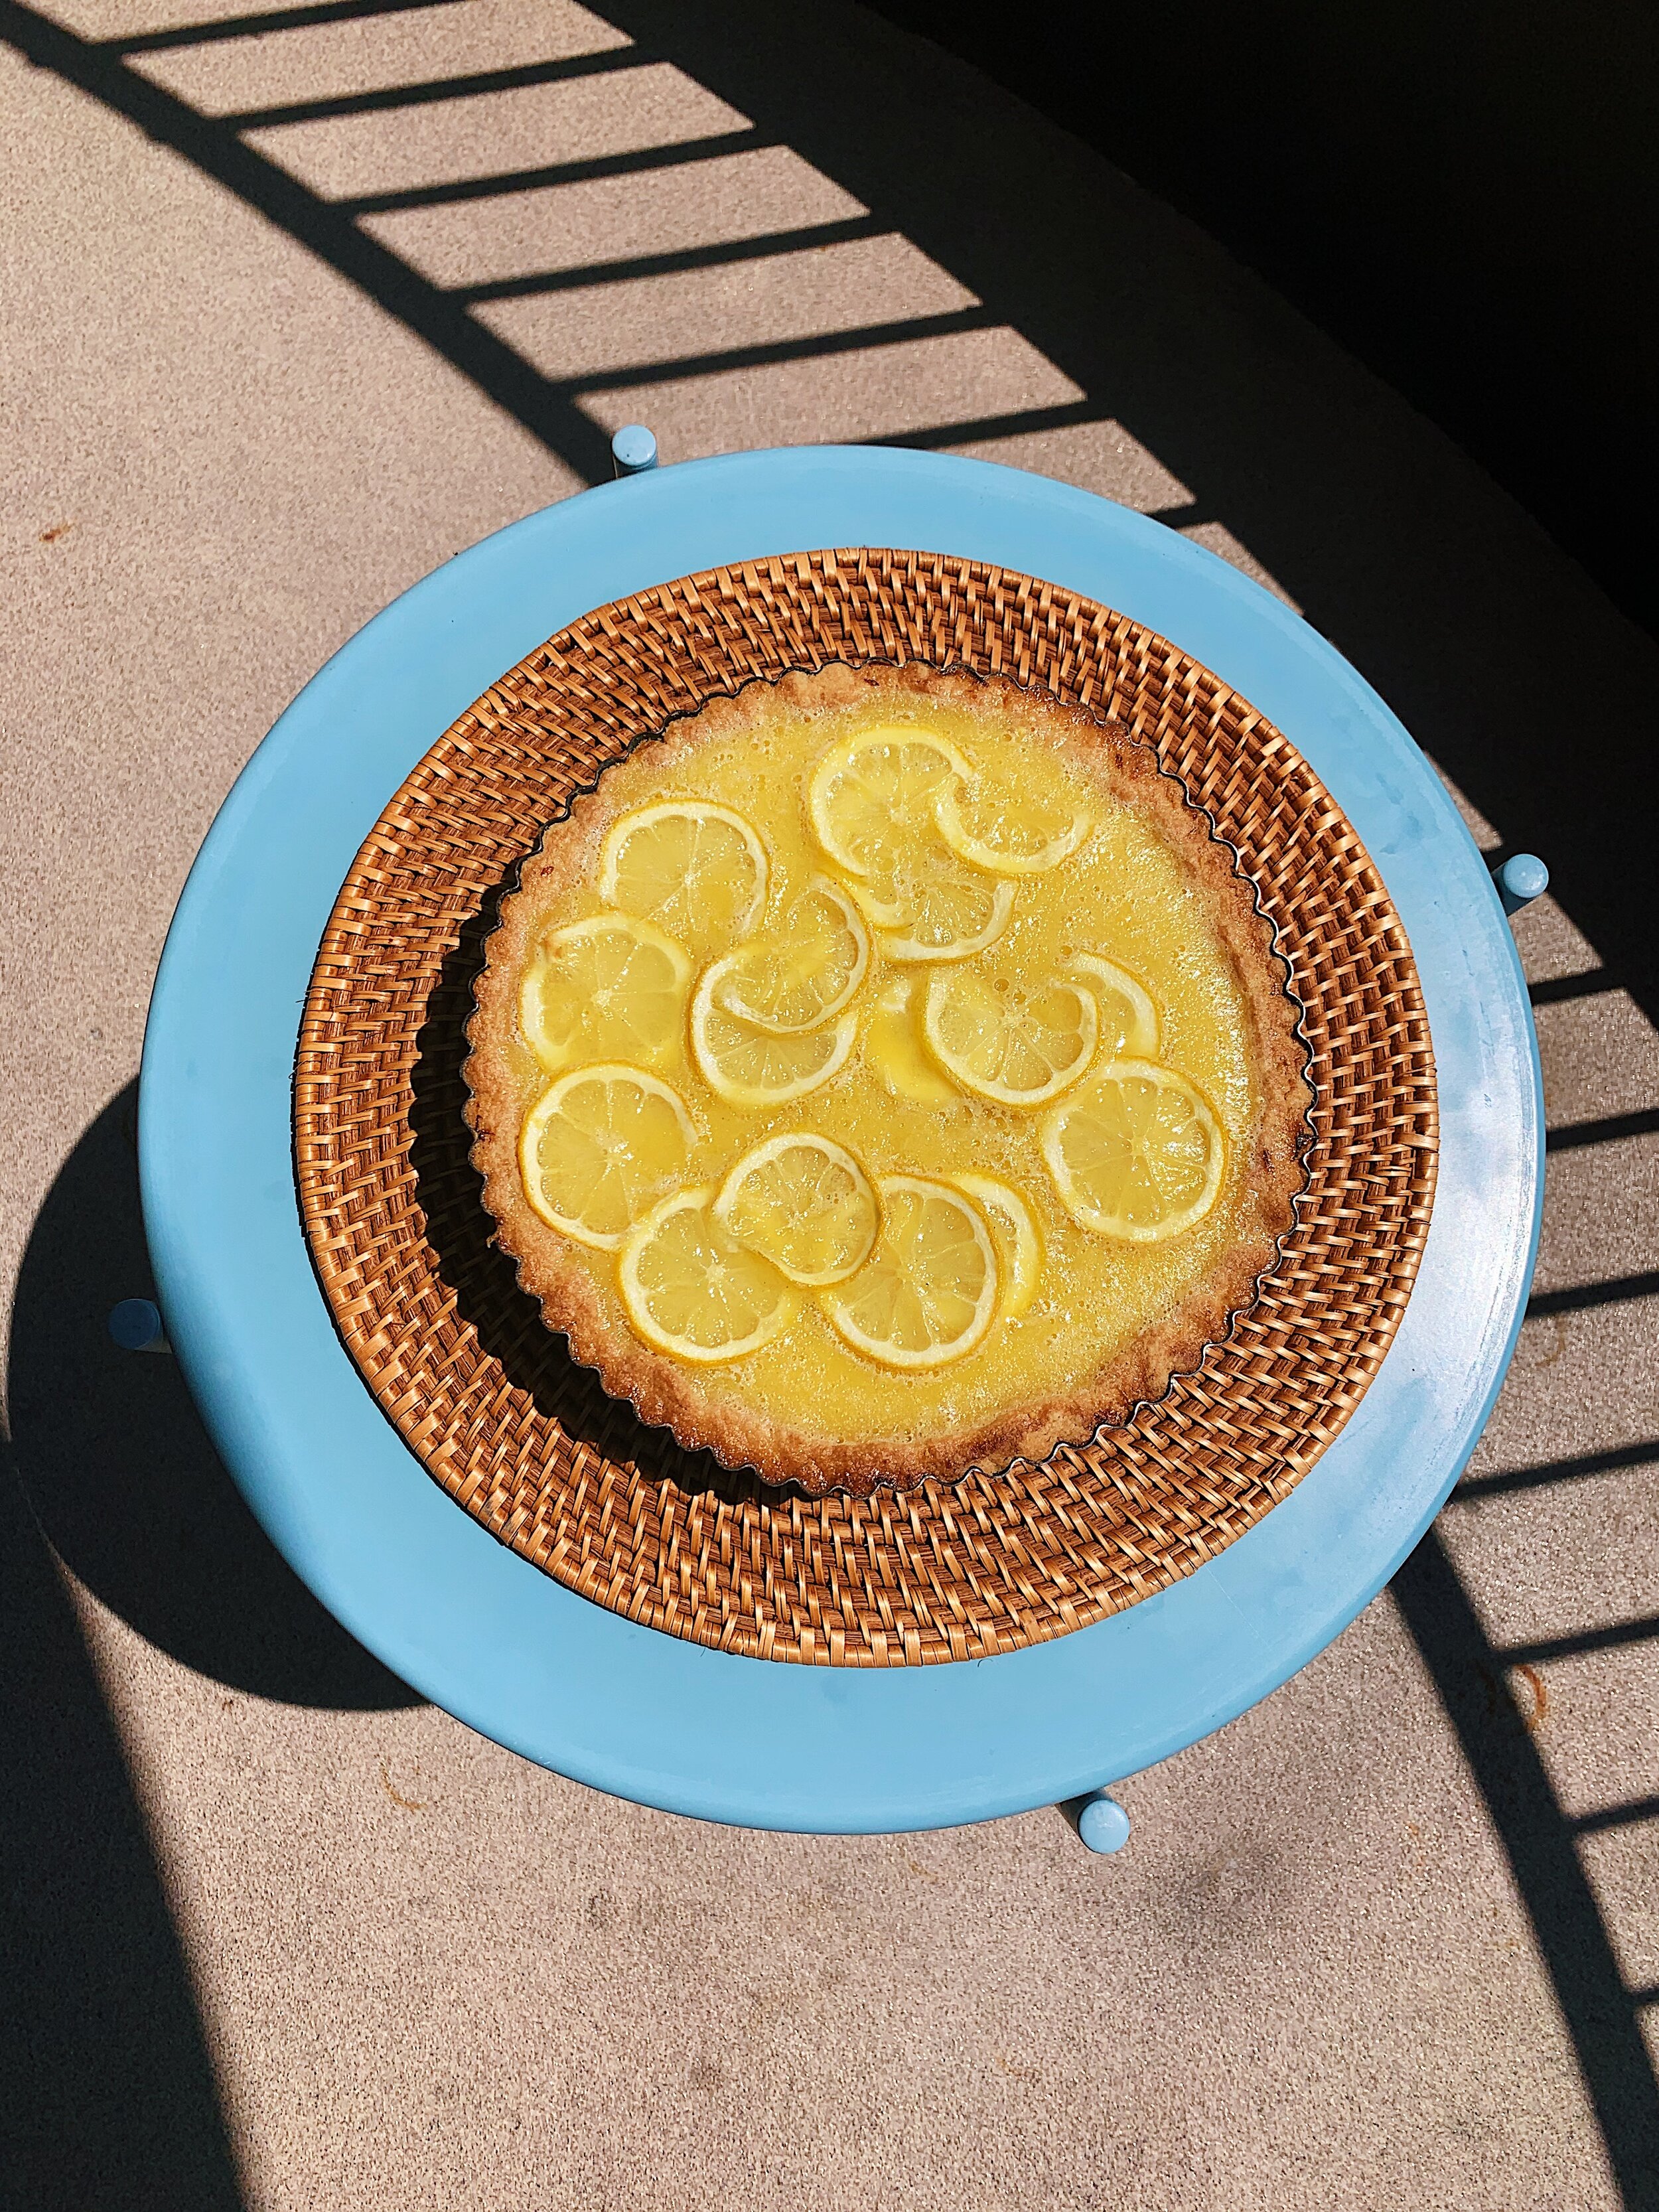 lemon-shaker-tart-alison-roman-tart-1.jpg